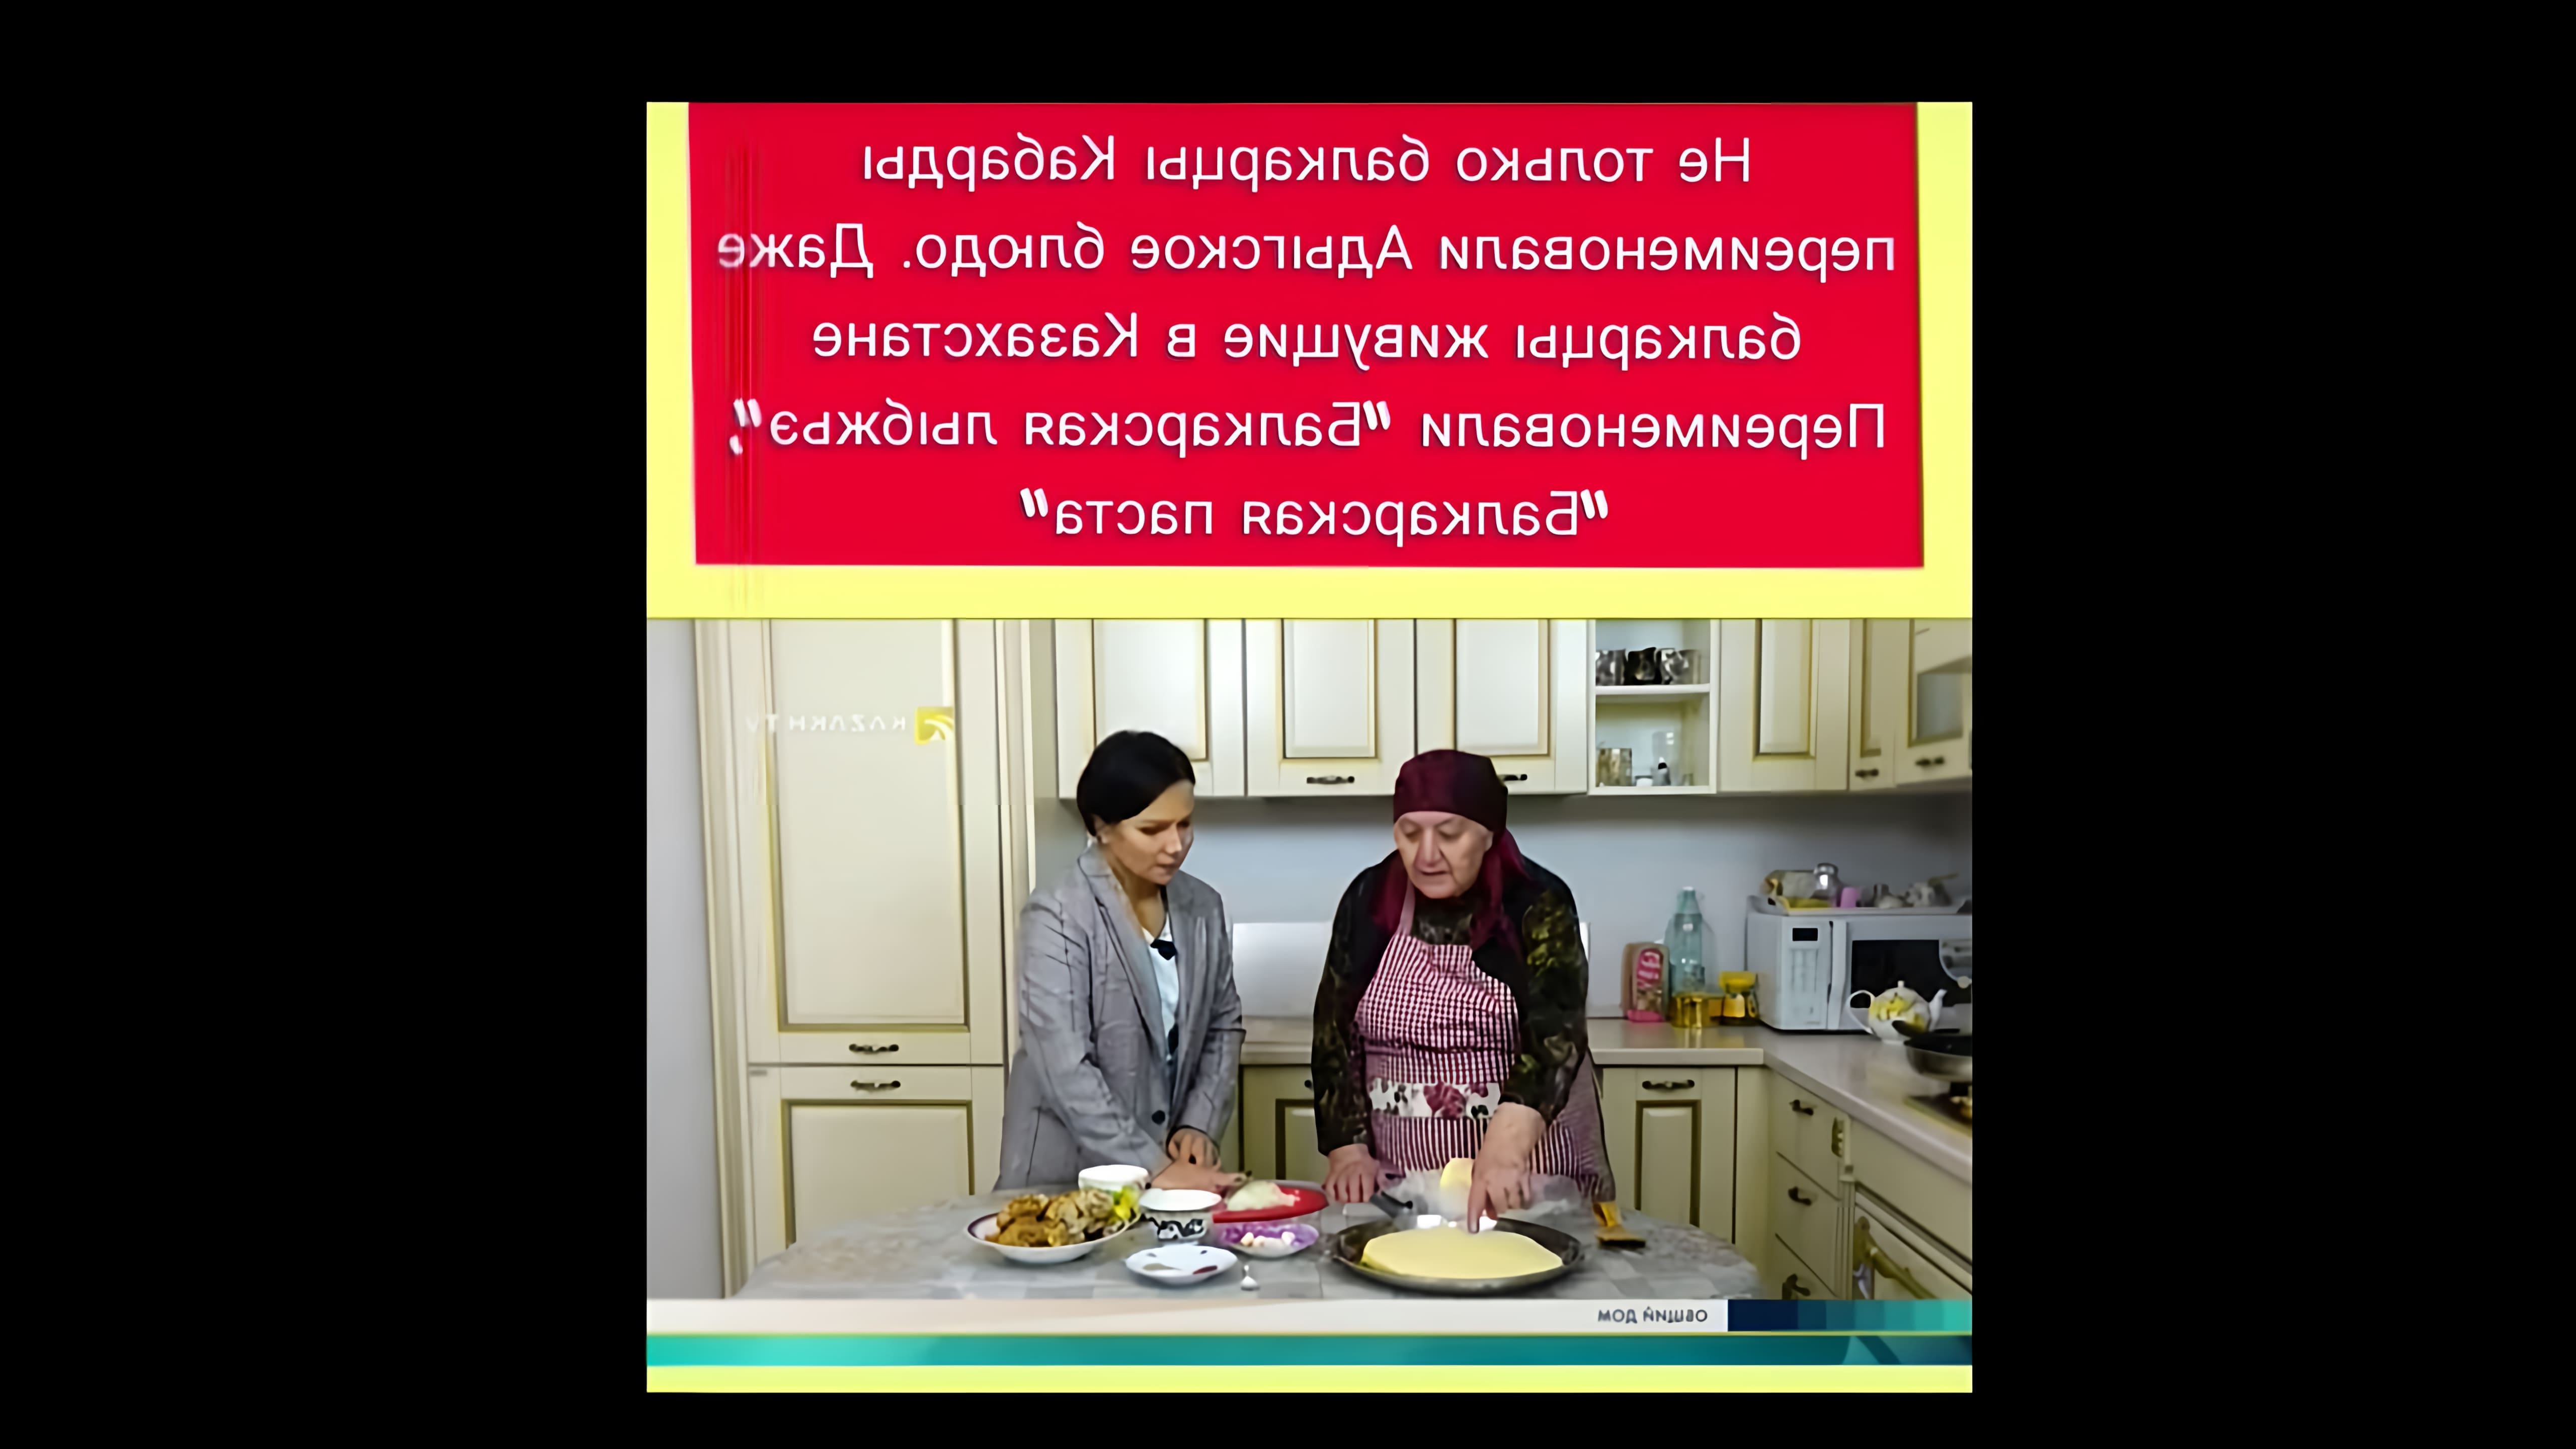 В этом видео демонстрируется процесс приготовления адыгского блюда лыбжьэ в балкарском варианте